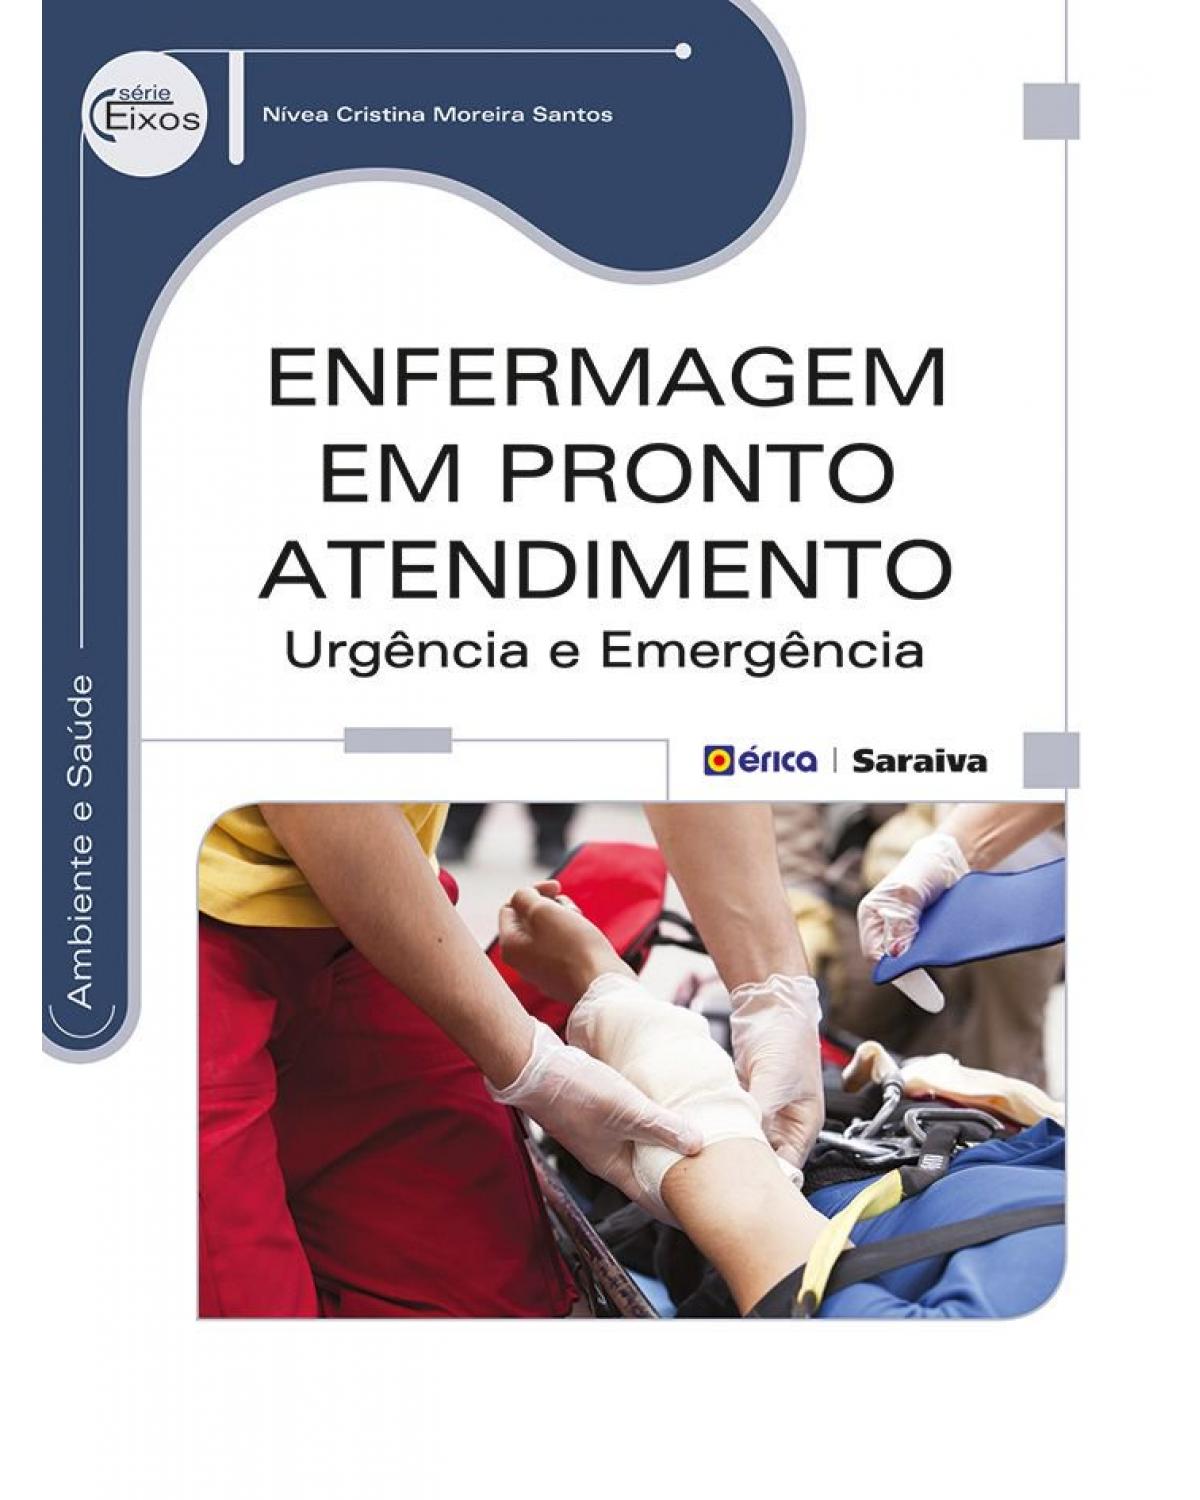 Enfermagem em pronto atendimento - urgência e emergência - 1ª Edição | 2014